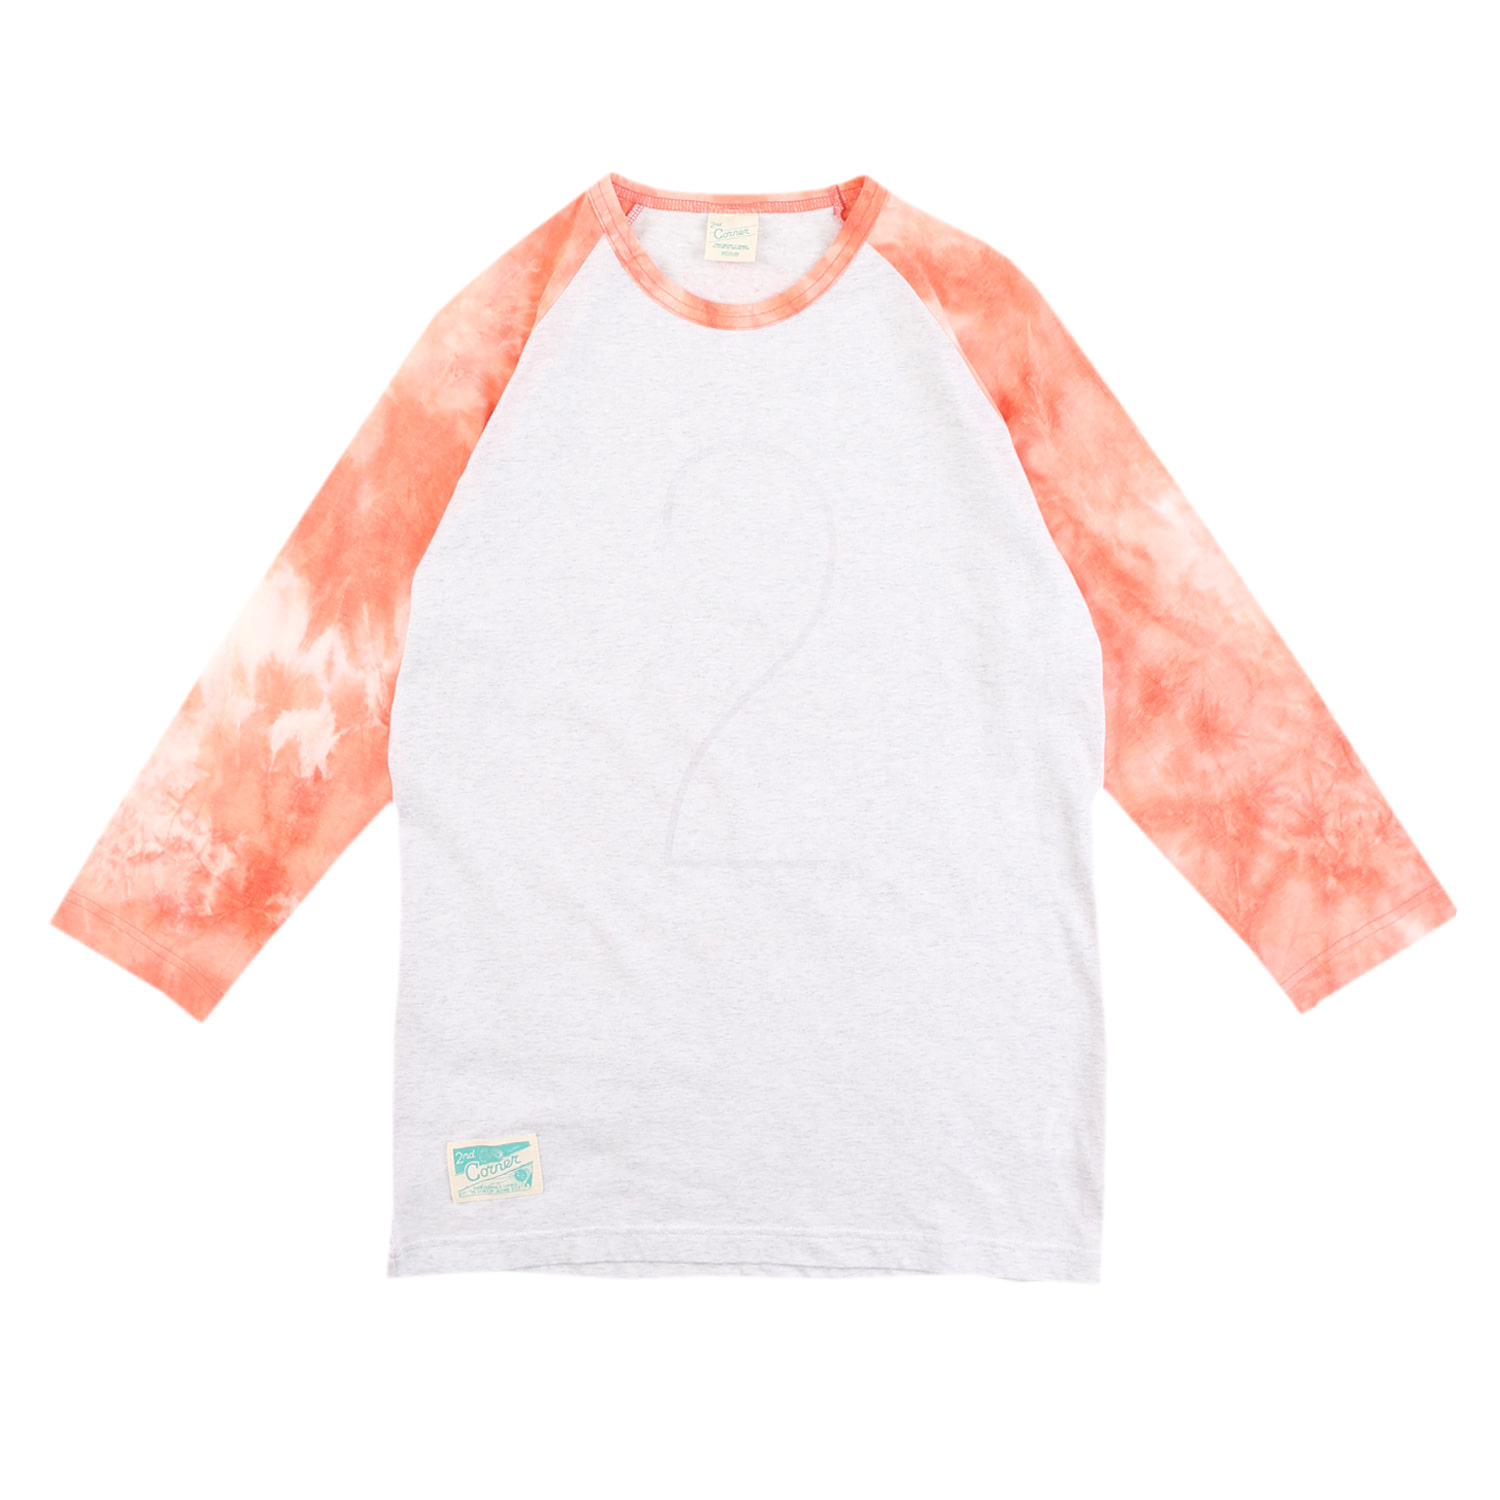 세컨드코너 2C 남성 7부 티셔츠 / 그래픽 티셔츠 / 봄-여름-가을 / 라운드넥 카프리 티셔츠 / 물나염 티셔츠 Torso - White/Orange